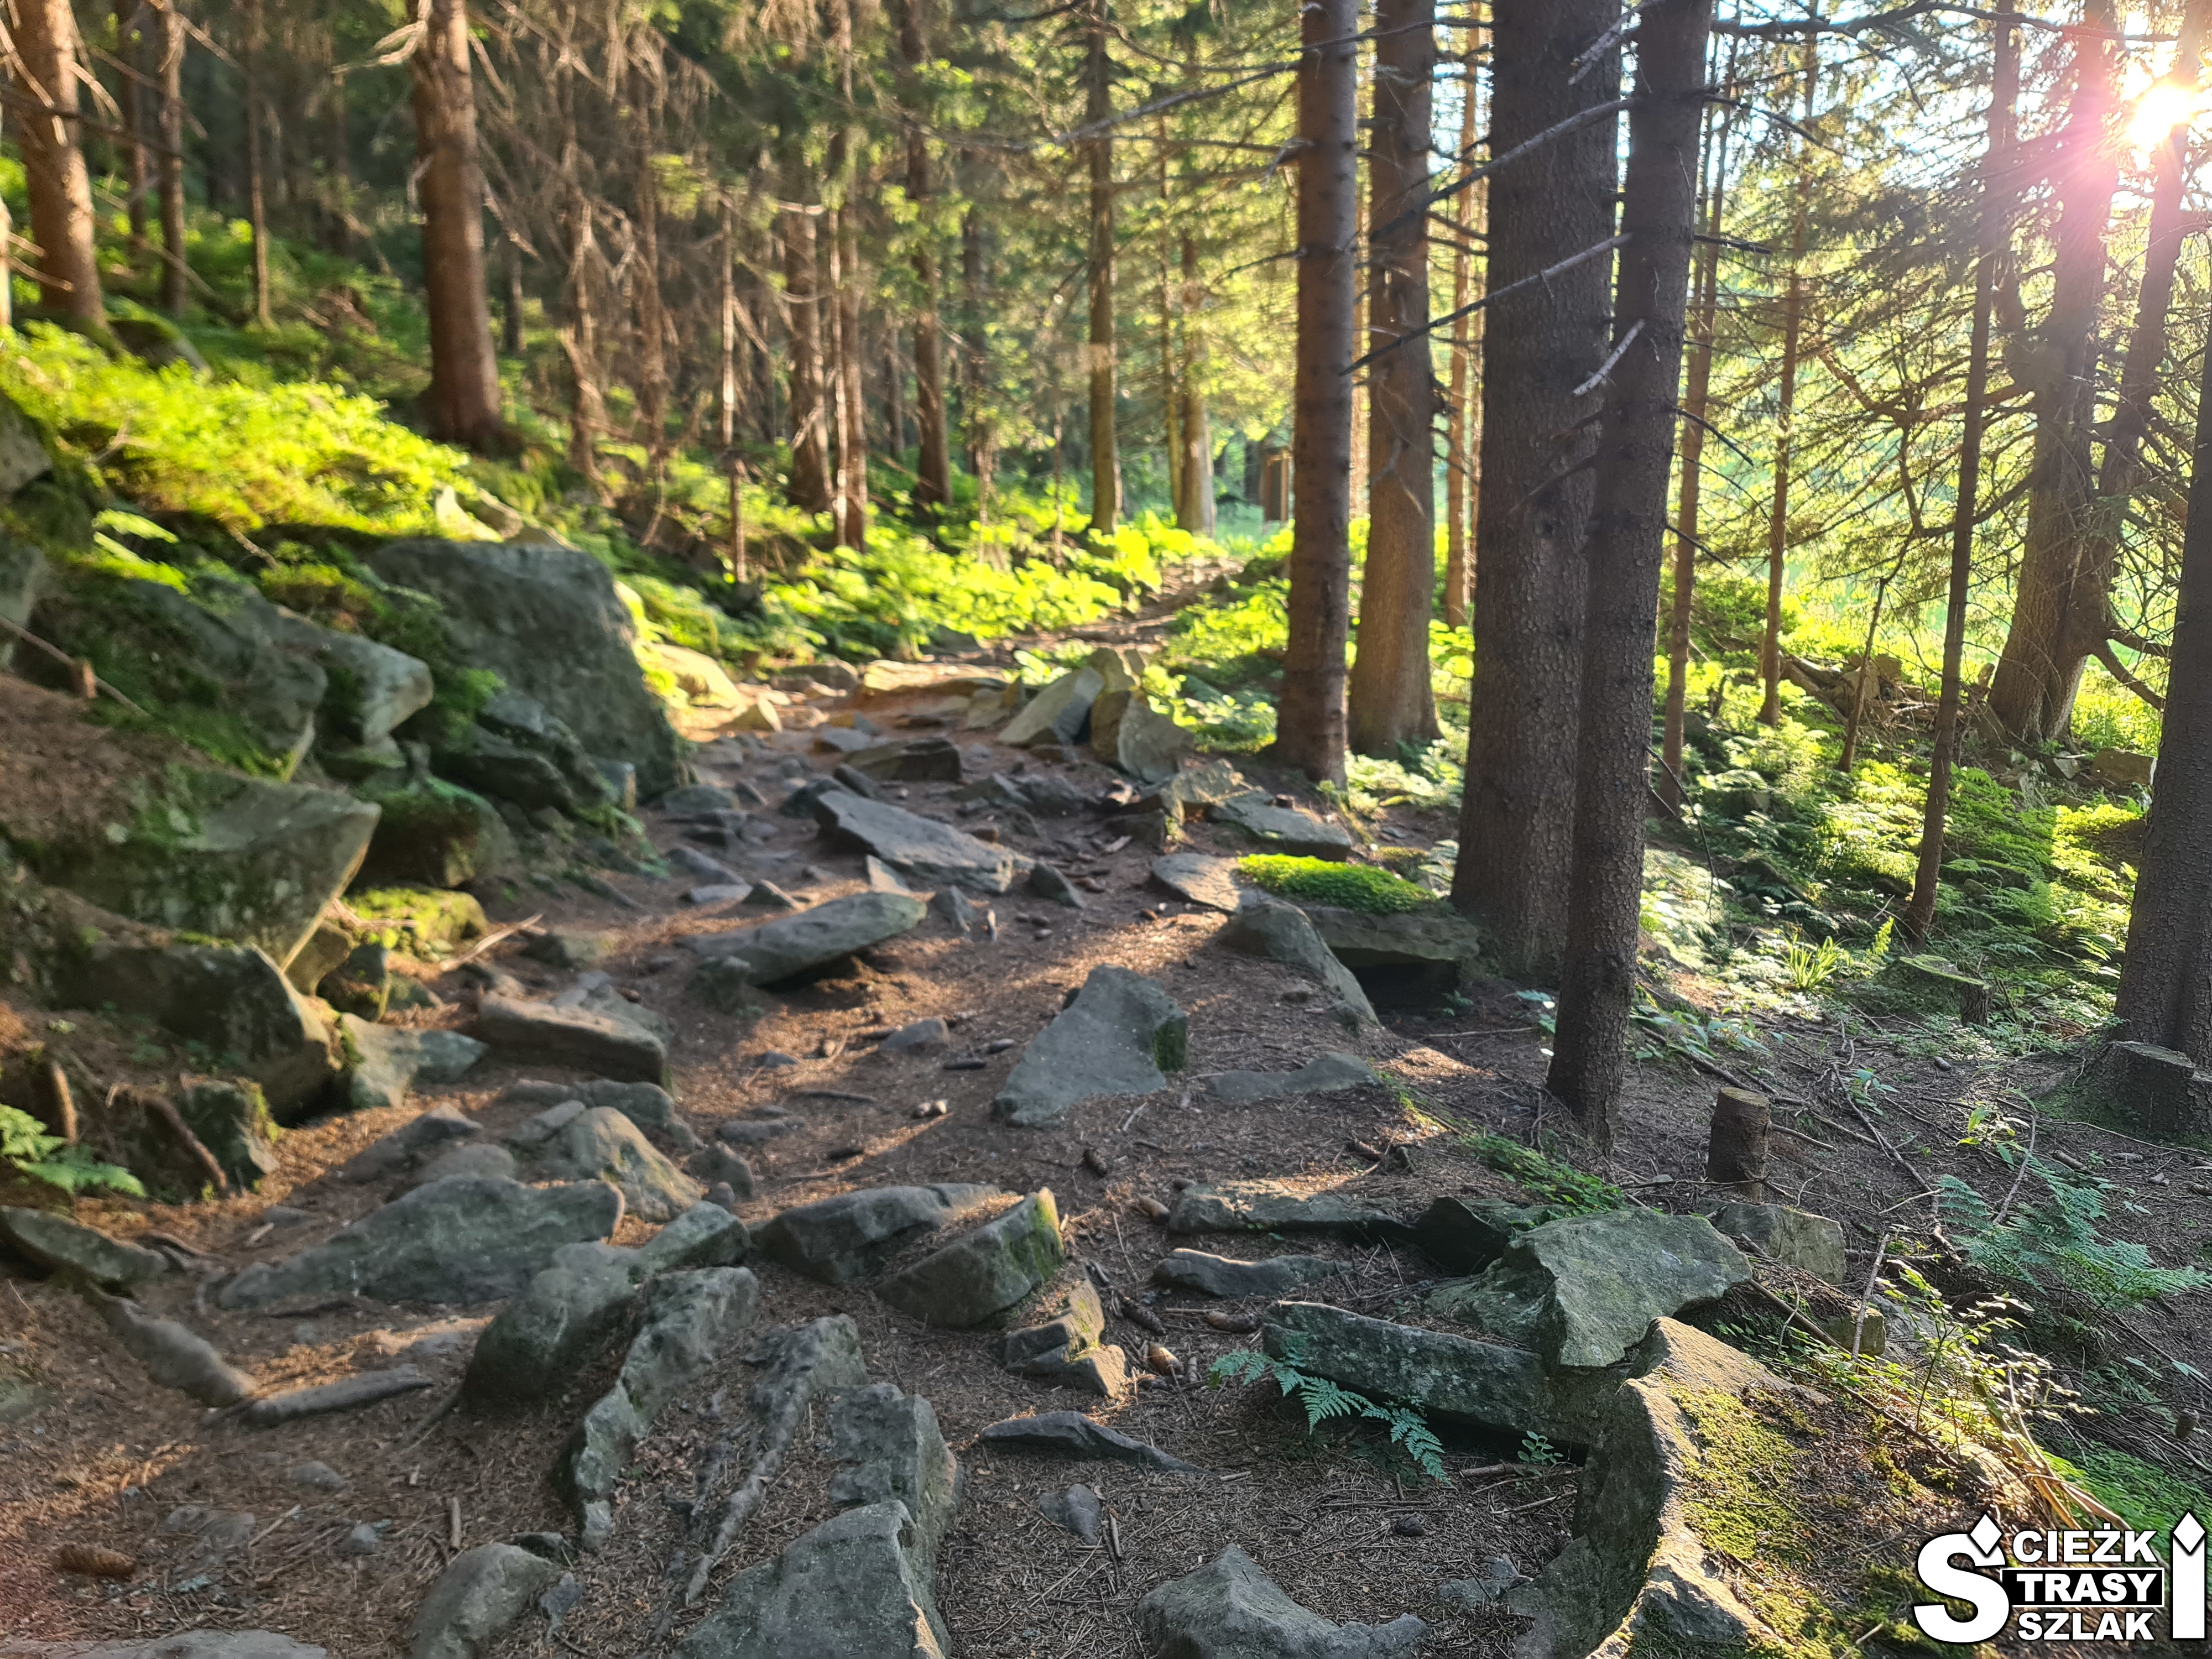 Kamienna ścieżka leśna łącząca Halę Miziową z parkingiem przy granicy polsko-słowackiej